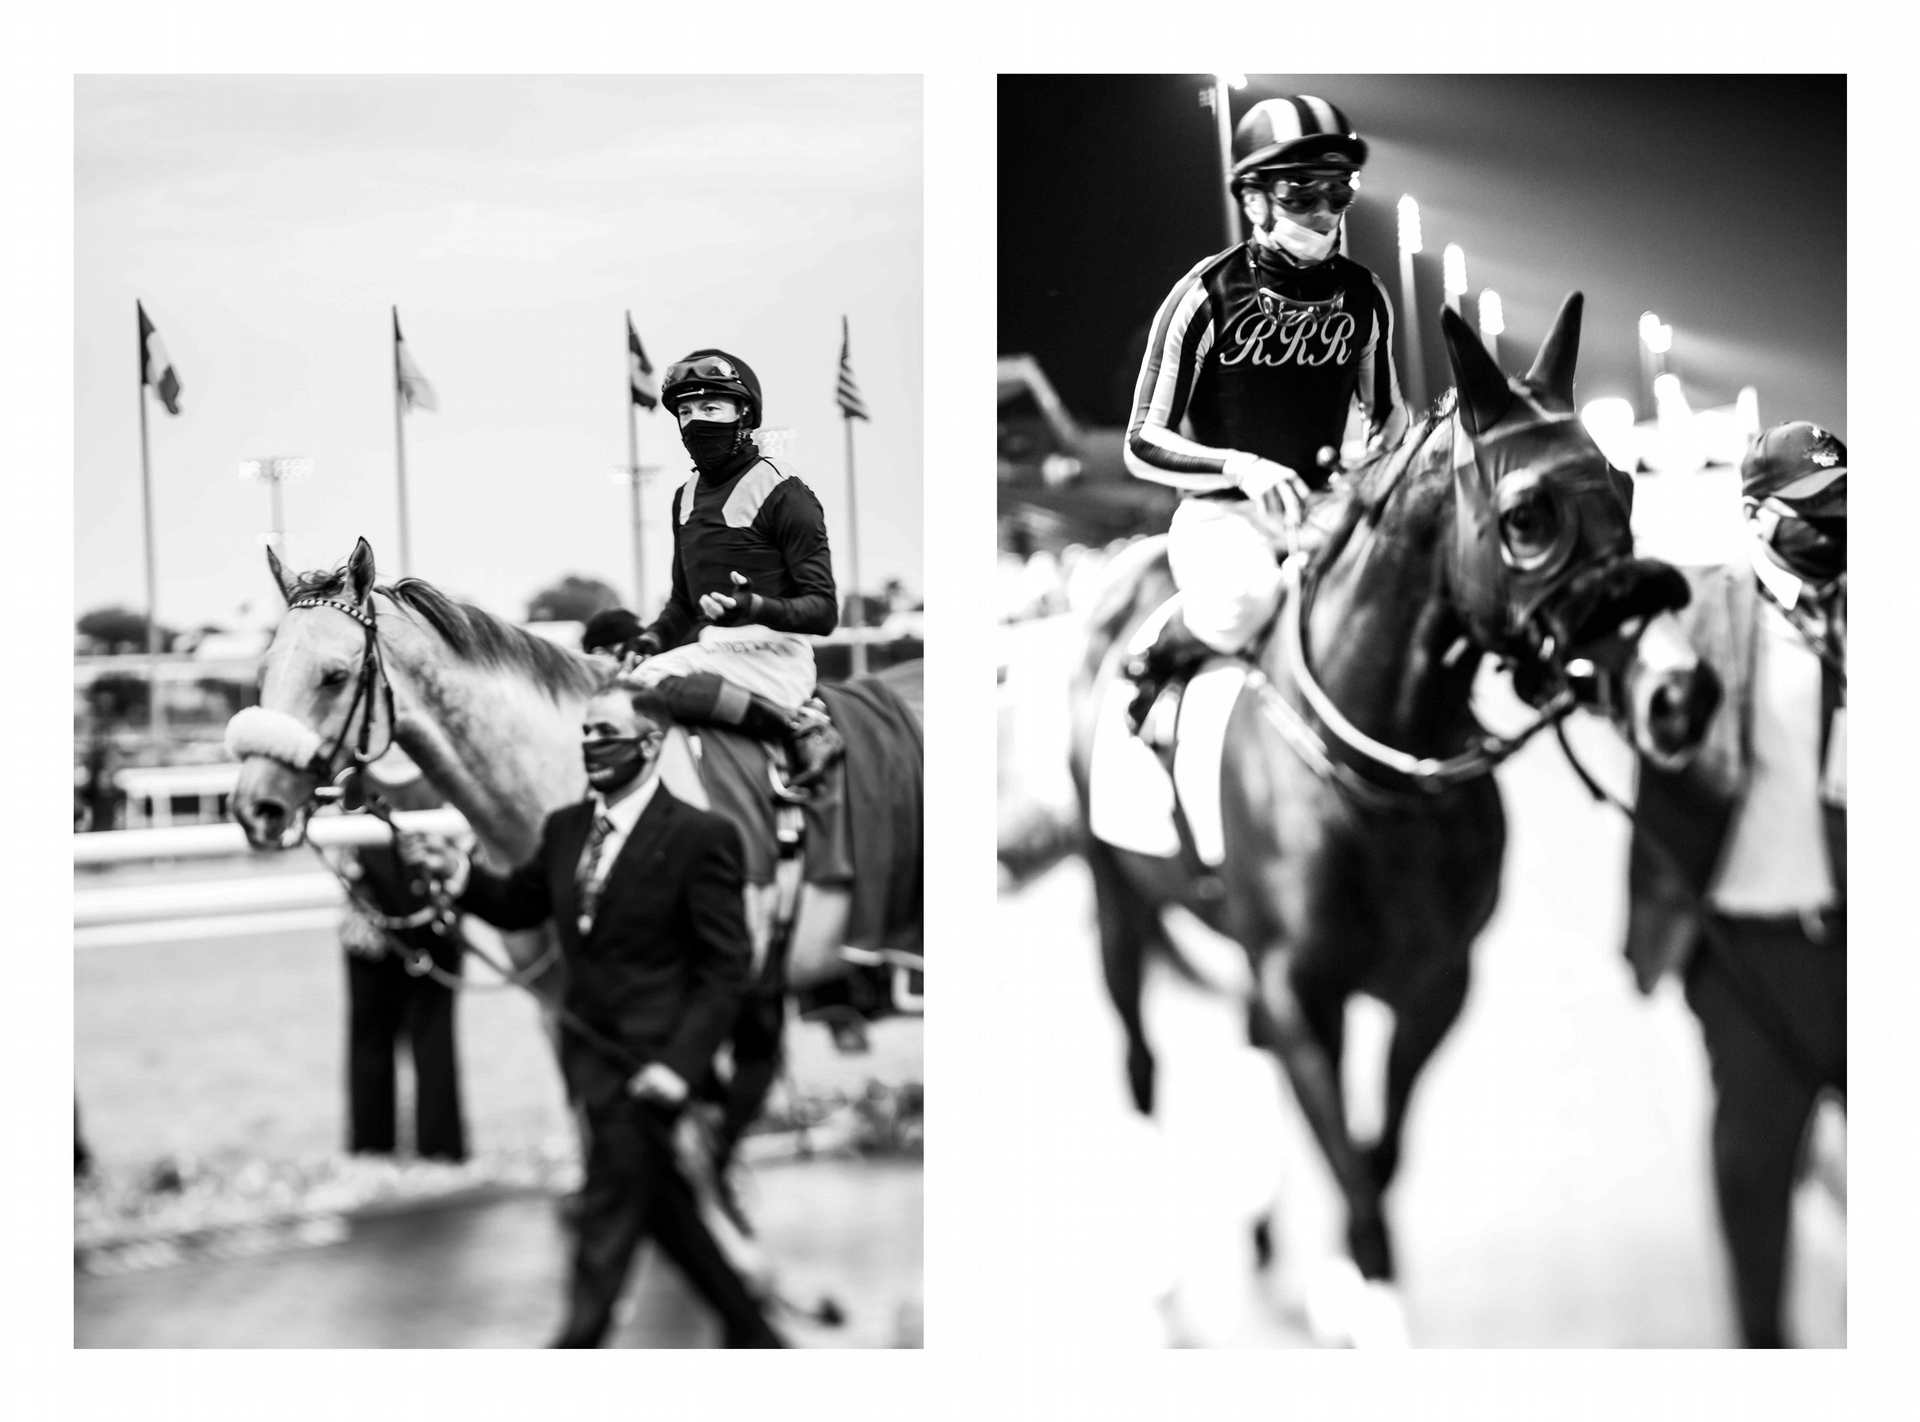 <b>2021 年沙烏地杯 - </b>戴著口罩的騎師似乎能在不被他人聽見的情況下跟馬兒講悄悄話。義大利騎師法蘭奇．戴圖理騎的馬叫「暗黑力量」（Dark Power），主人是巴林王室成員伊薩．本．薩勒曼．阿勒哈利法（左圖）。法國騎師米凱爾．巴澤羅納騎的馬名叫「瑞士」（Switzerland），主人是阿聯酋的謝赫．拉希德．本．胡邁德．阿爾努艾米（HH Sheikh Rashid bin Humaid Al Nuaimi）。